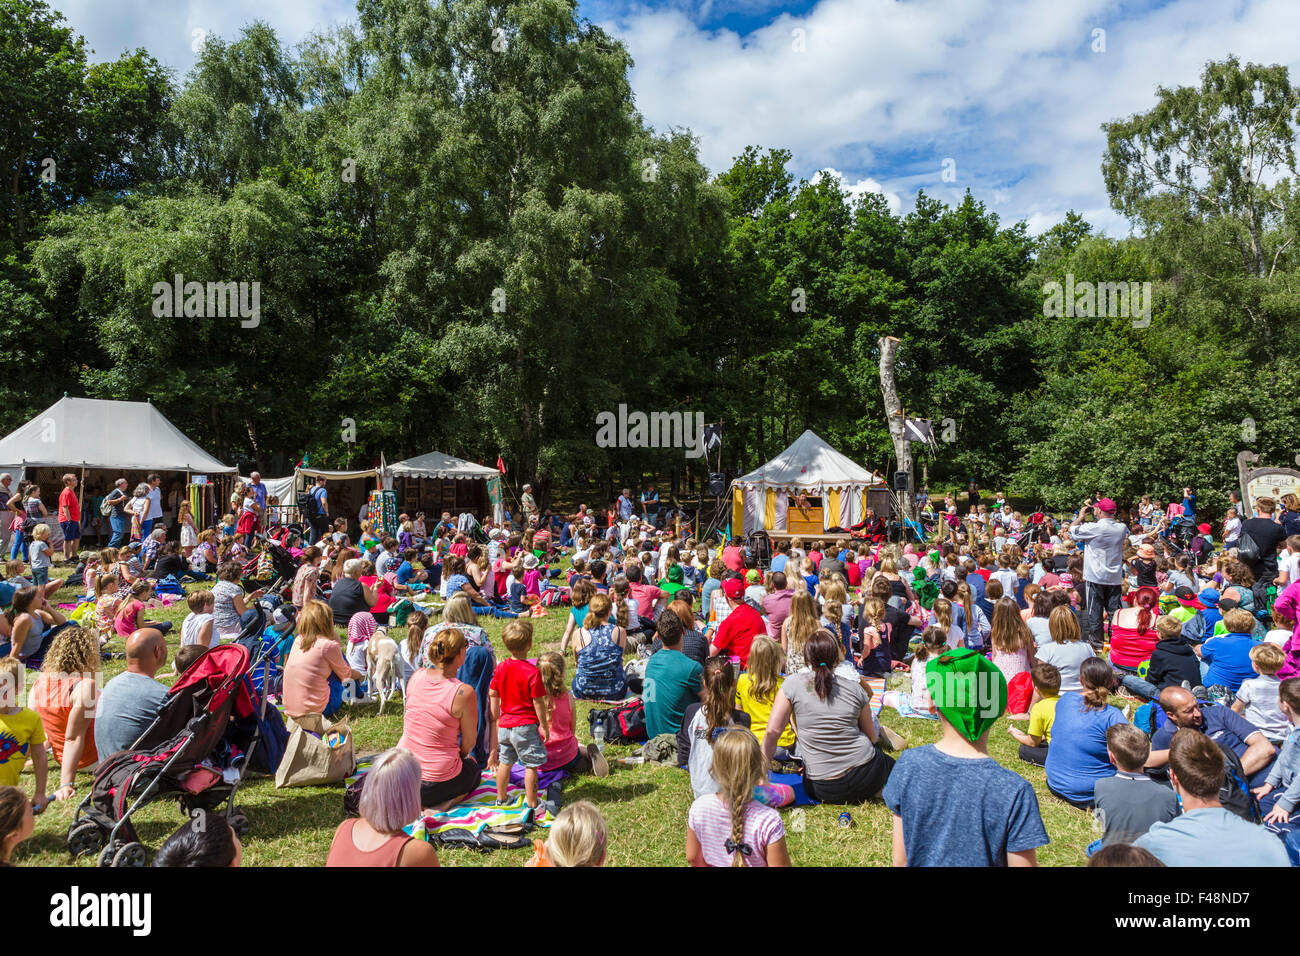 Diversión familiar en el Festival de Robin Hood, en agosto de 2015, el Bosque de Sherwood Country Park, Edwinstowe, Nottinghamshire, REINO UNIDO Foto de stock